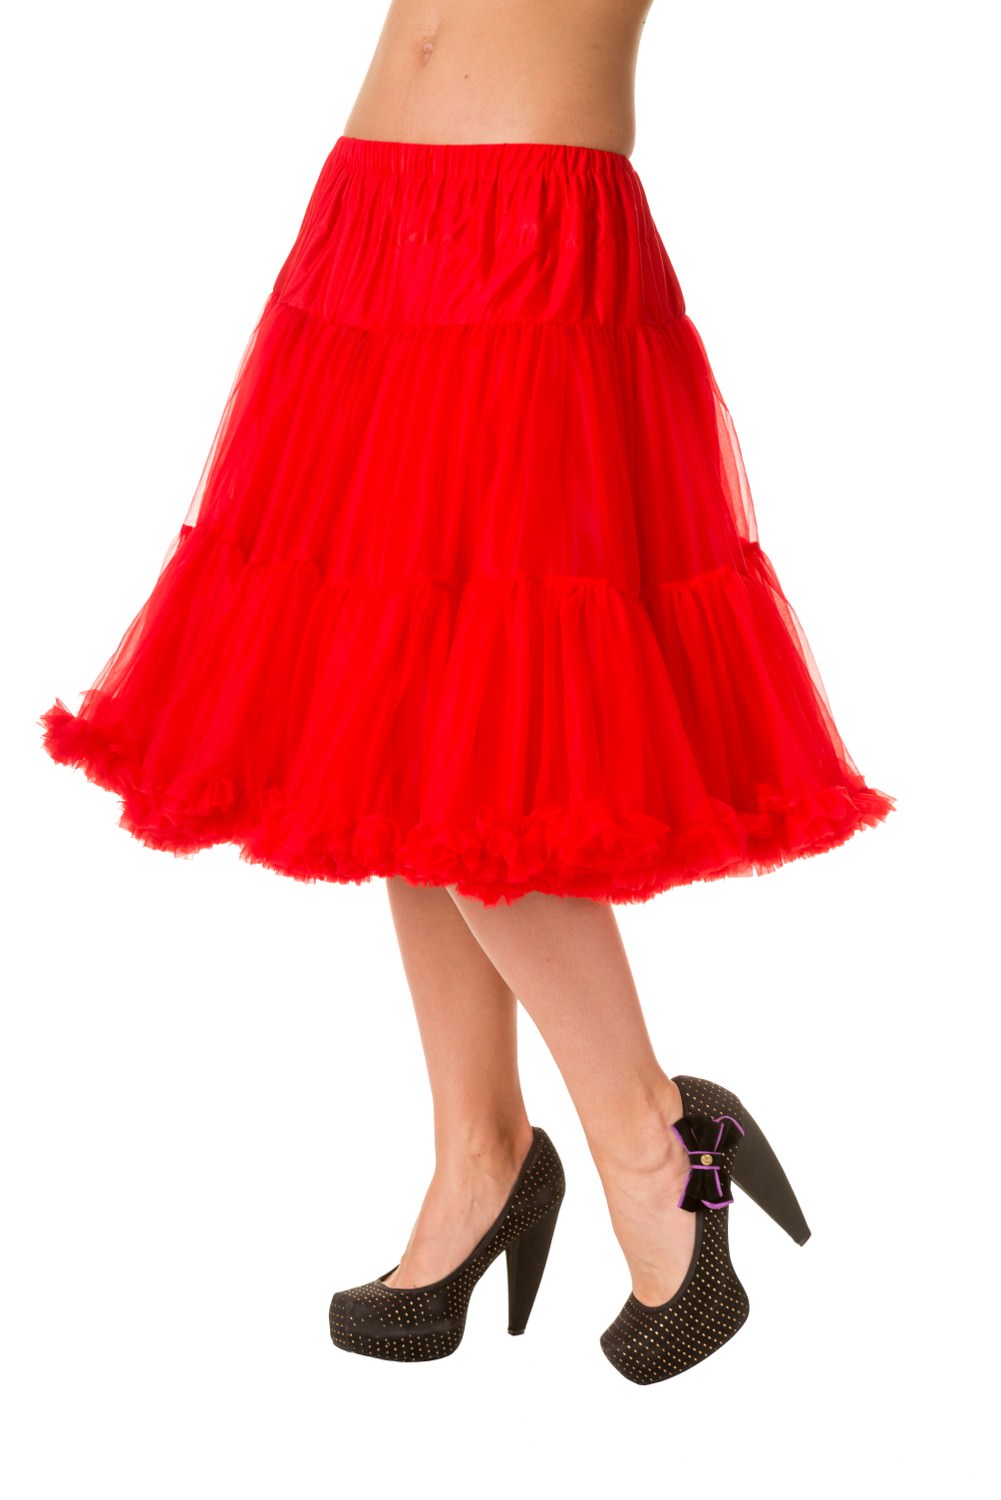 Banned Retro 50s Starlite Red Petticoat